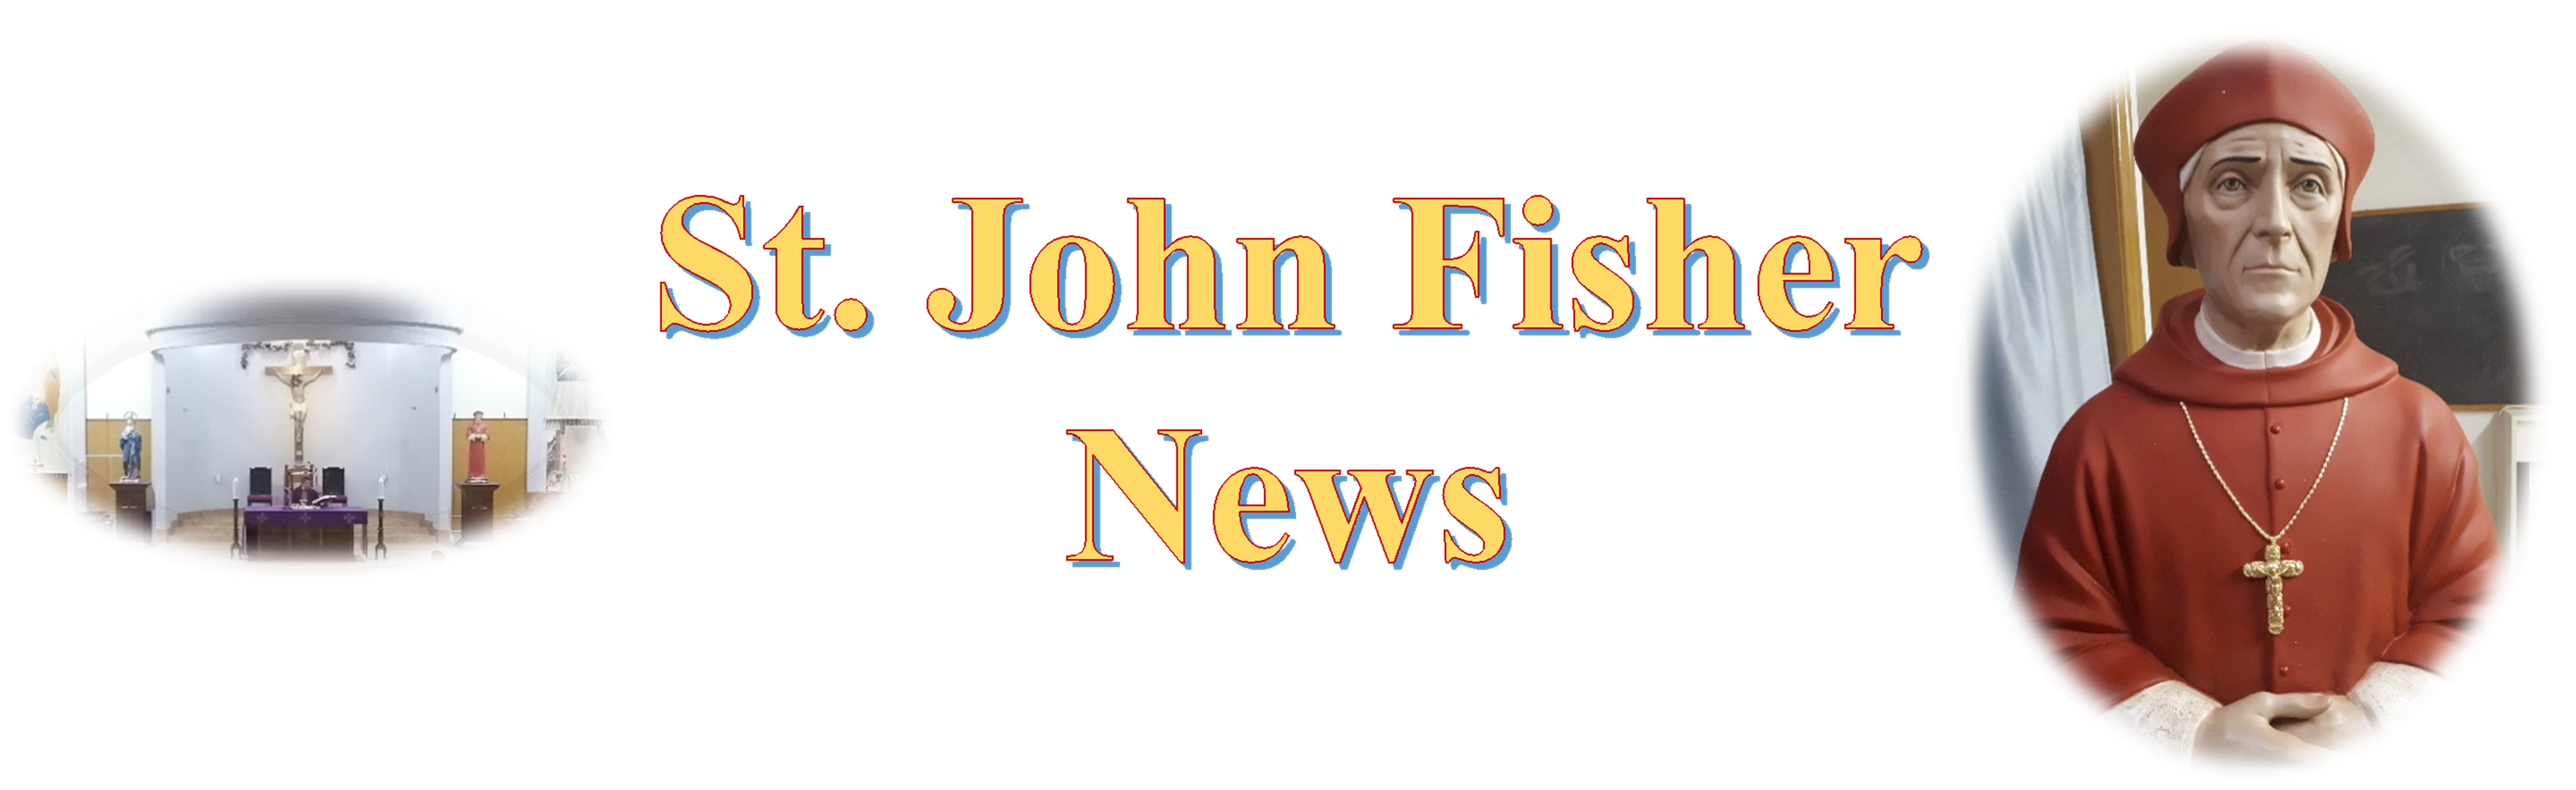 St John Fisher News banner